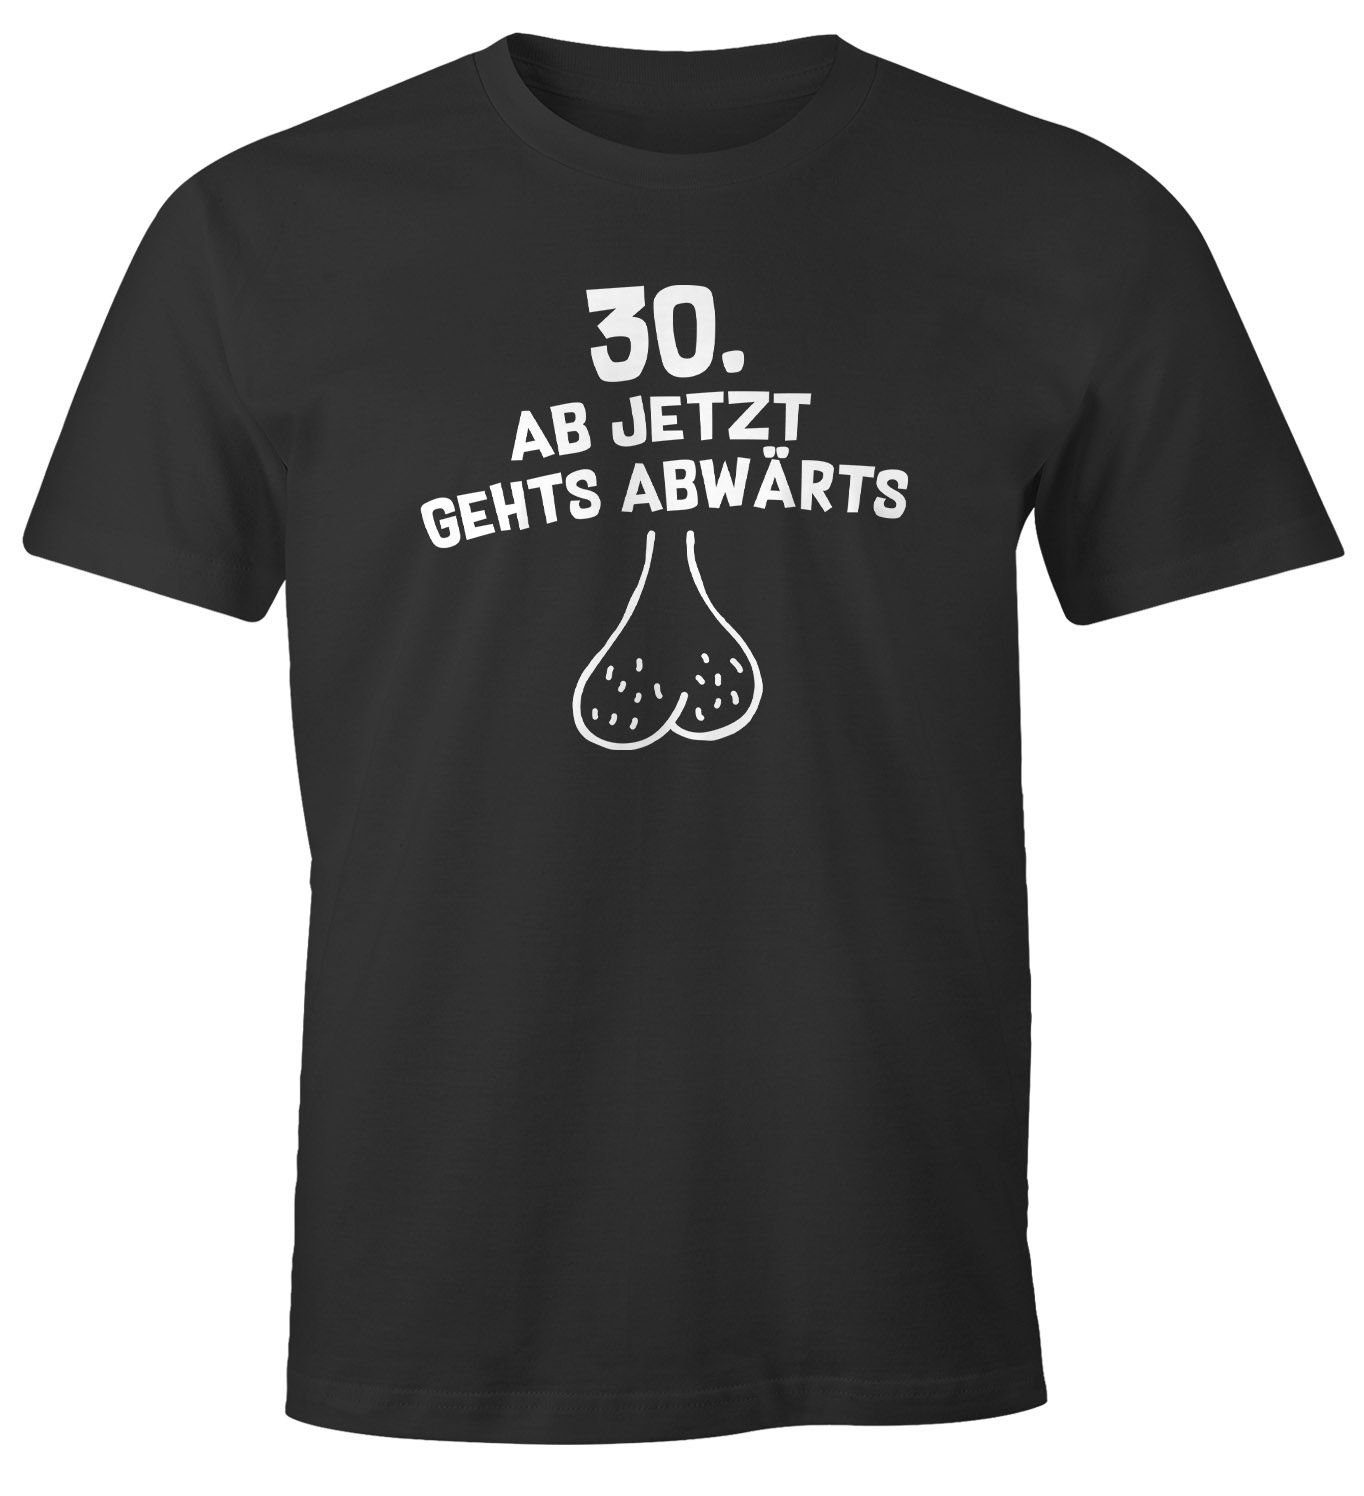 MoonWorks Geburtstag T-Shirt ab jetzt hängender mit Sack abwärts Print-Shirt gehts Geschenk 30. Print MoonWorks® Männer für Herren